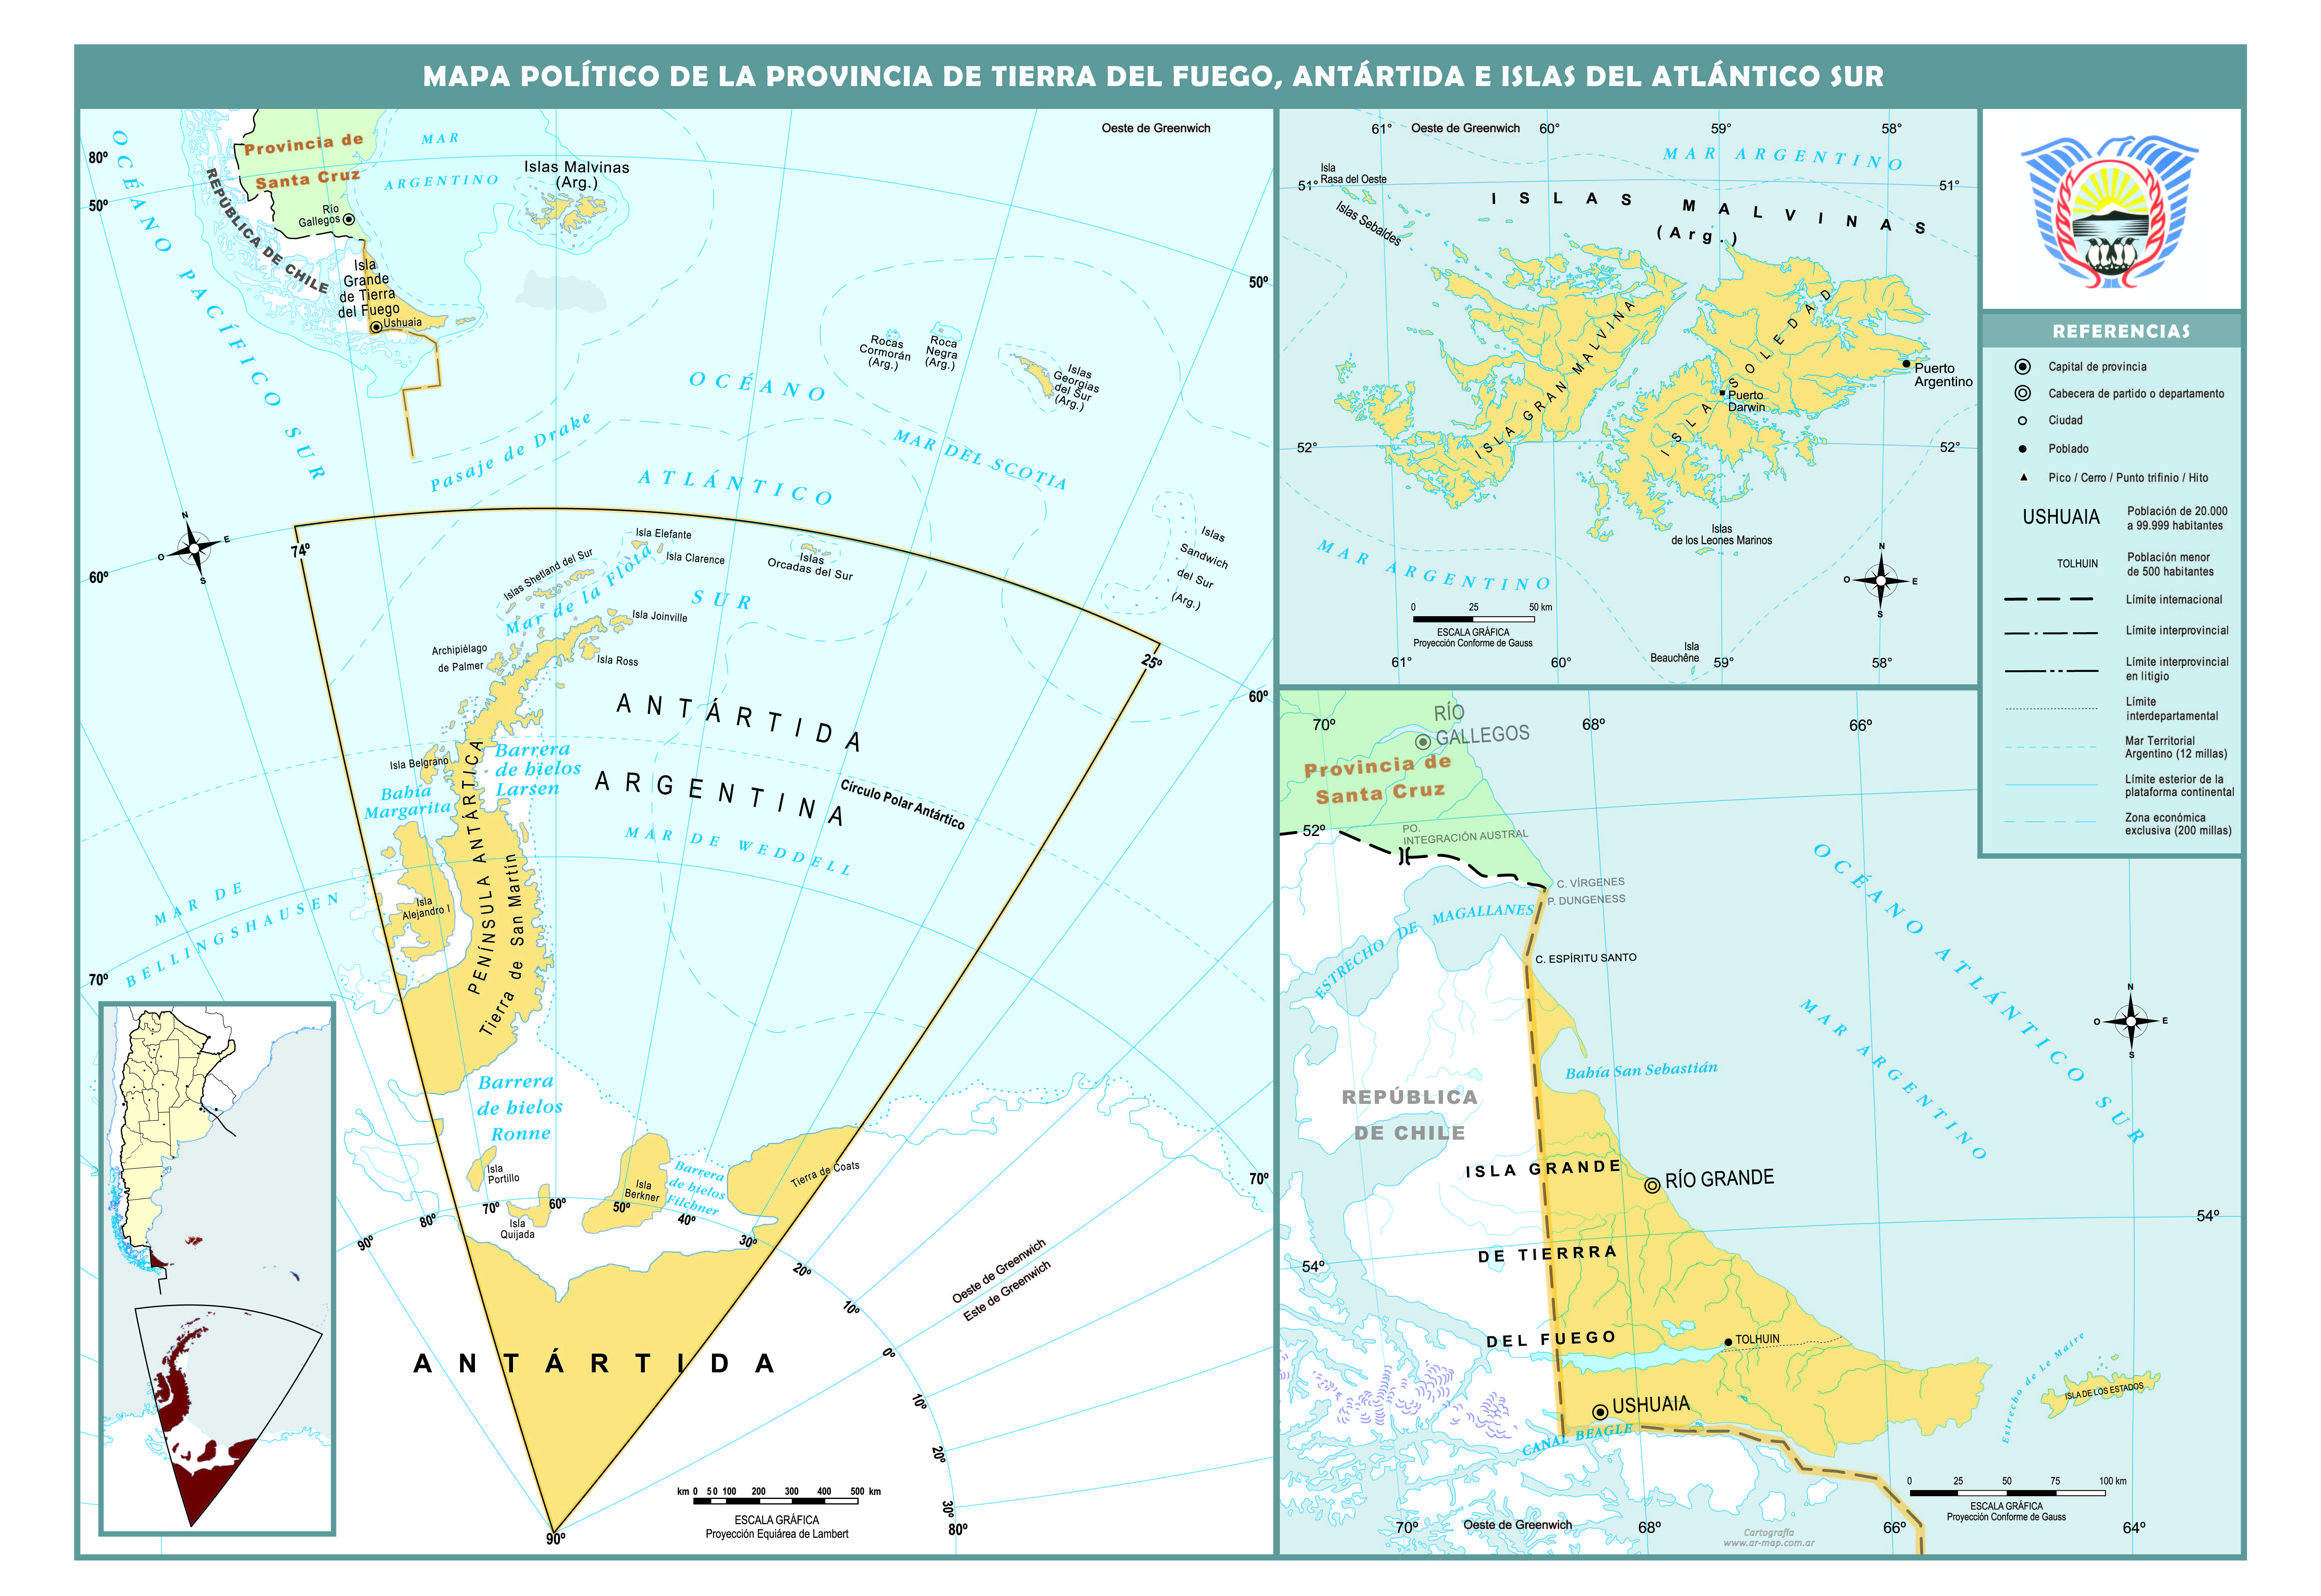 Mapa político de la provincia de Tierra del Fuego, Antártida e islas del Atlántico Sur